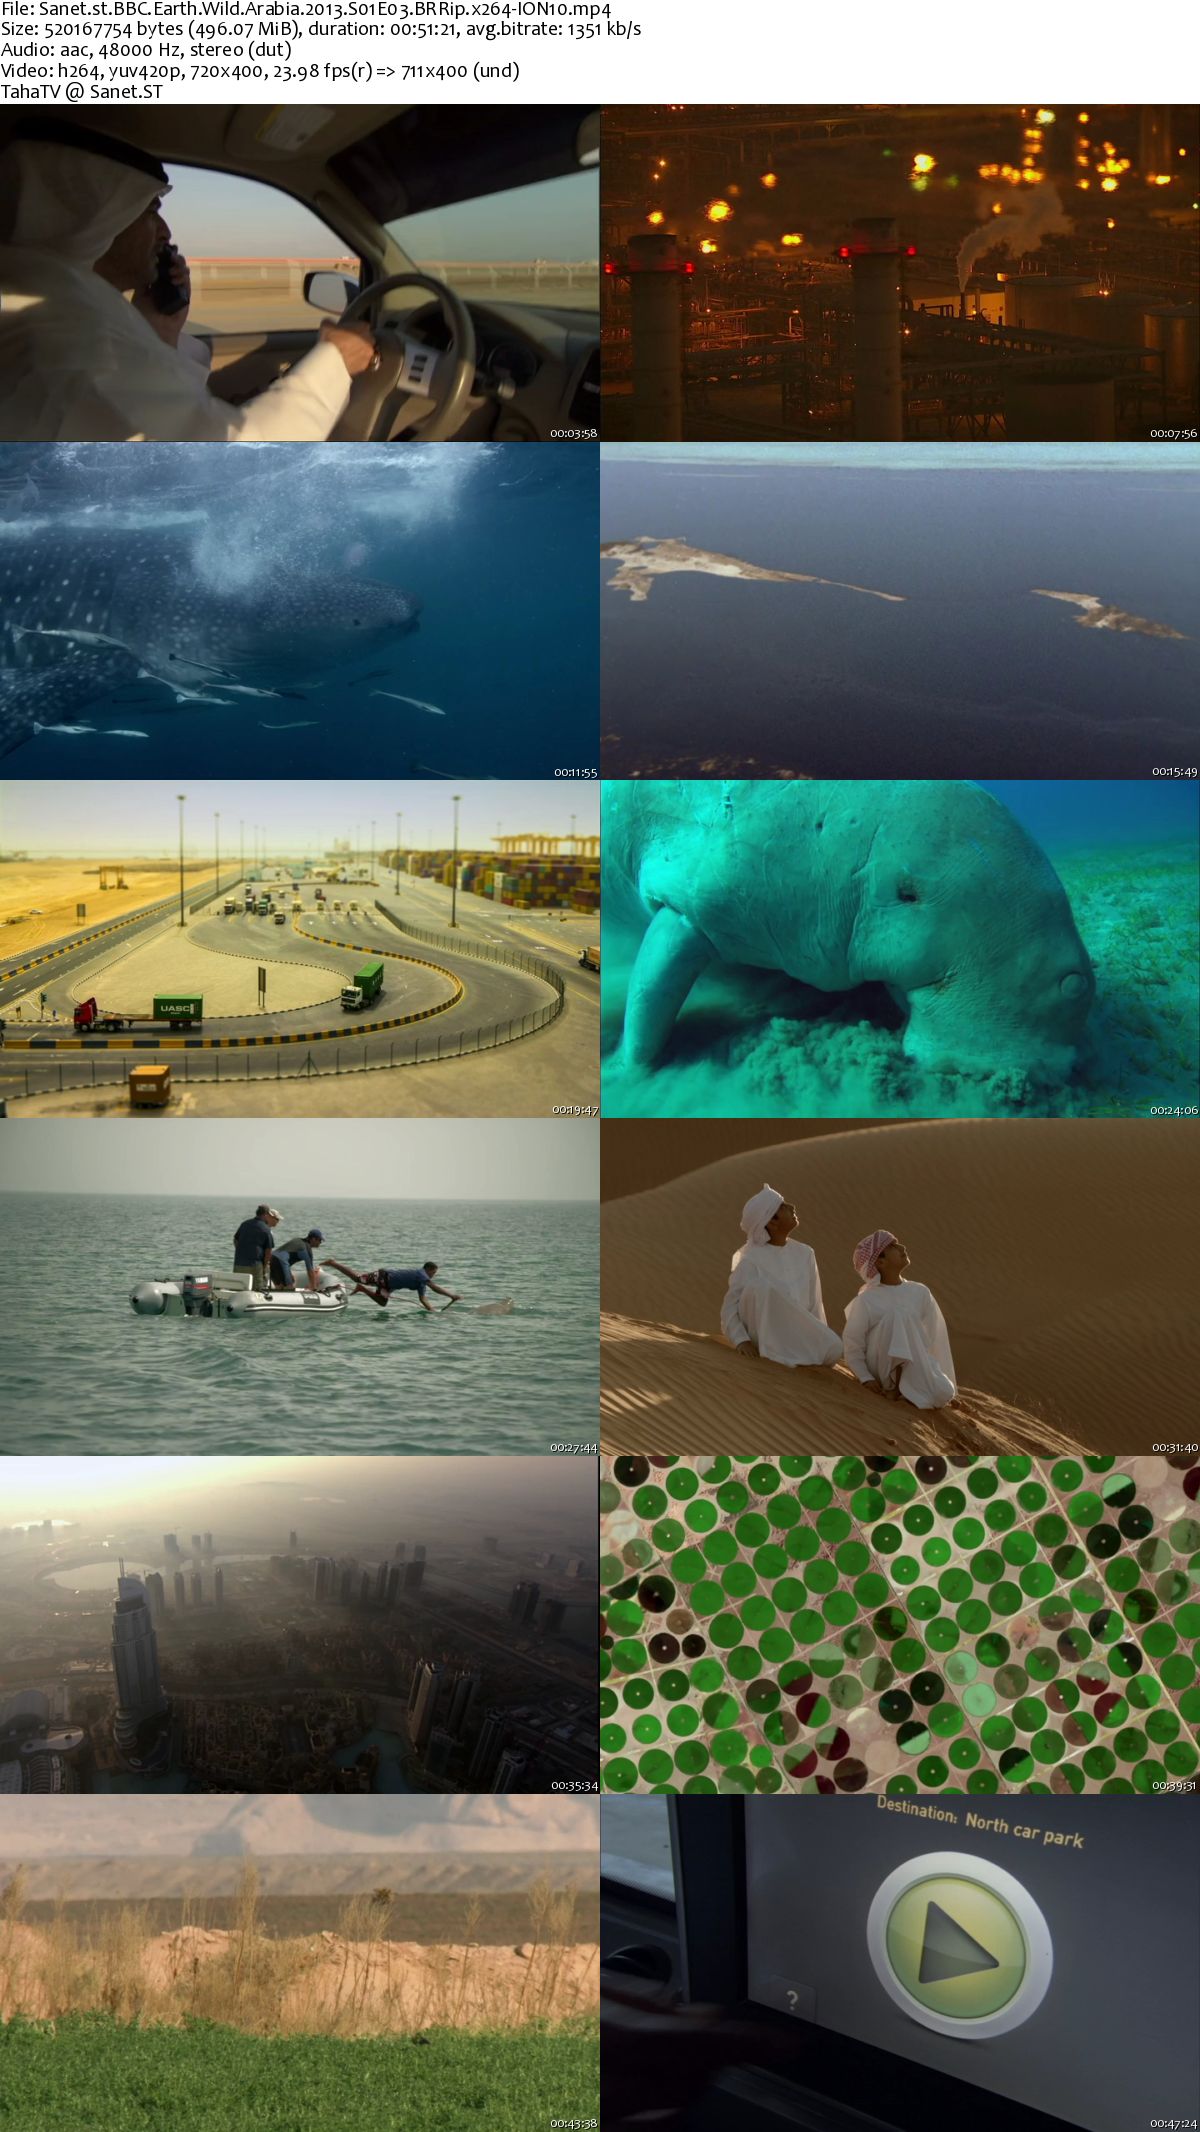 دانلود فیلم مستند 2013 Bbc Wild Arabia بی بی سی حیات وحش 